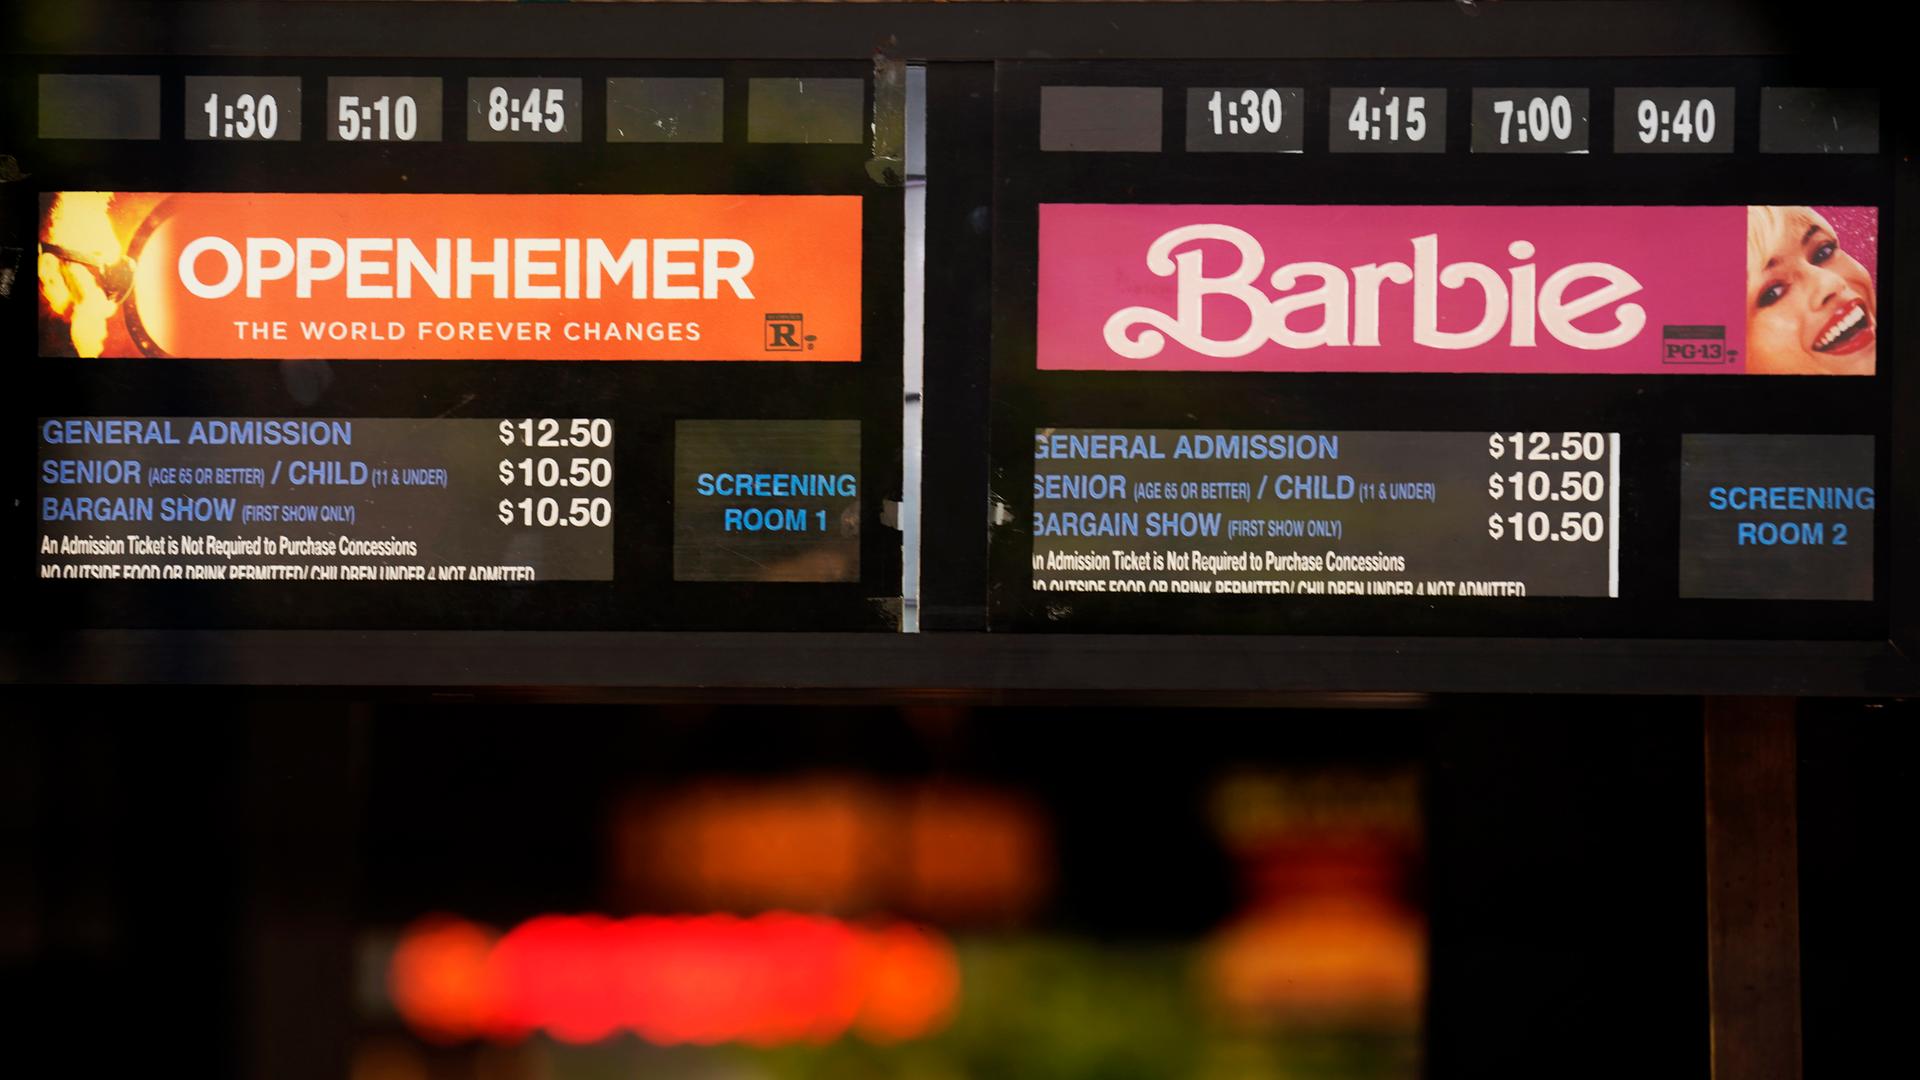 Auf einer Anzeigentafel sind die beiden Filme "Oppenheimer" und "Barbie" annonciert.